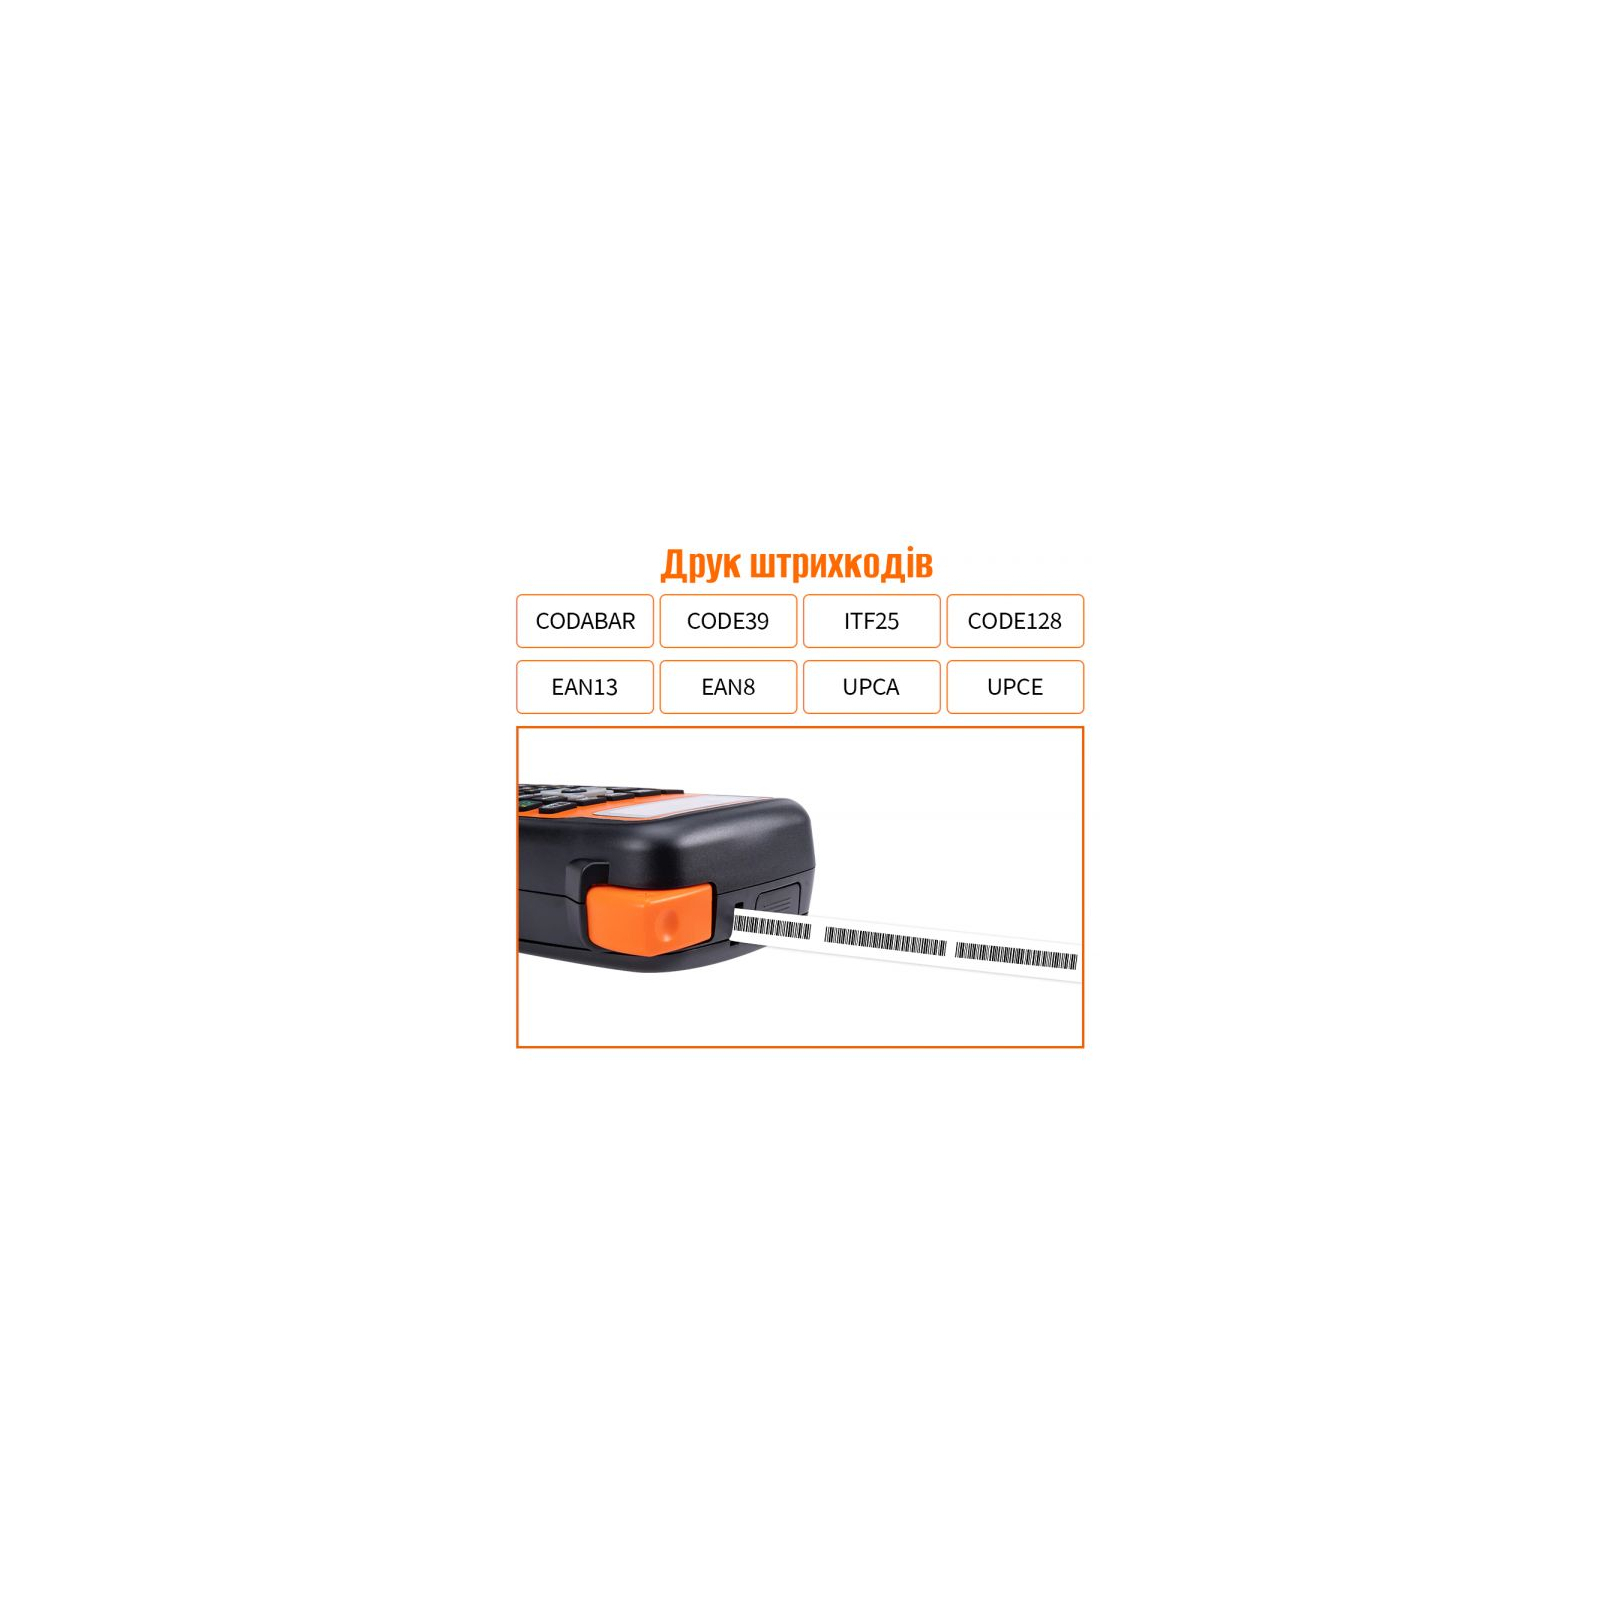 Принтер етикеток UKRMARK E1000 Pro Orange (900472) зображення 3